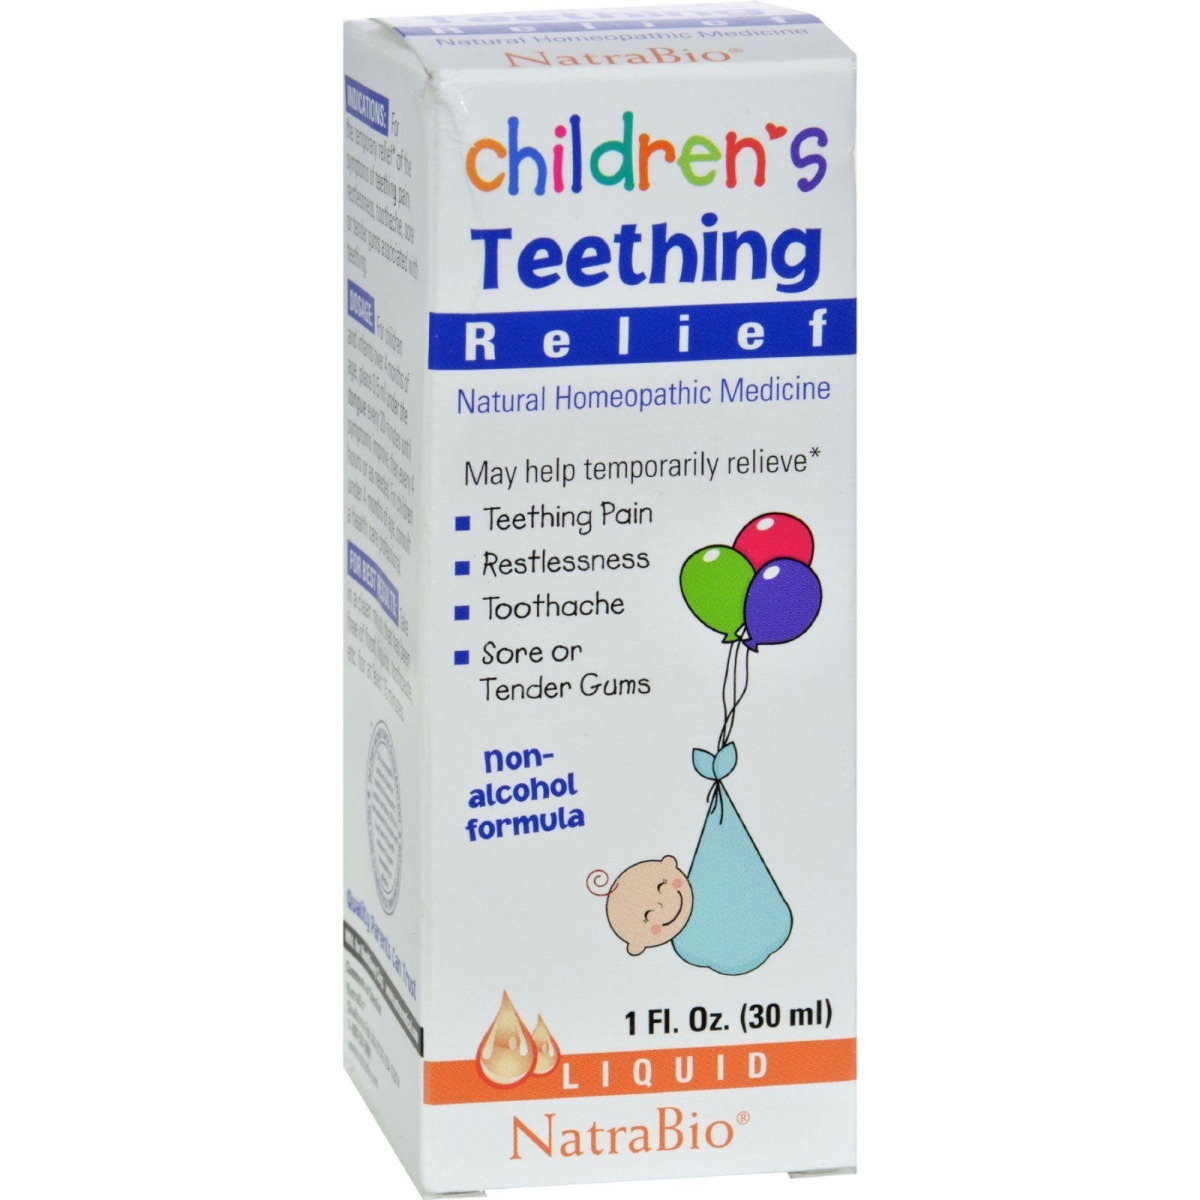 Natrabio Hg0897256 1 Fl Oz Childrens Teething Relief Drops